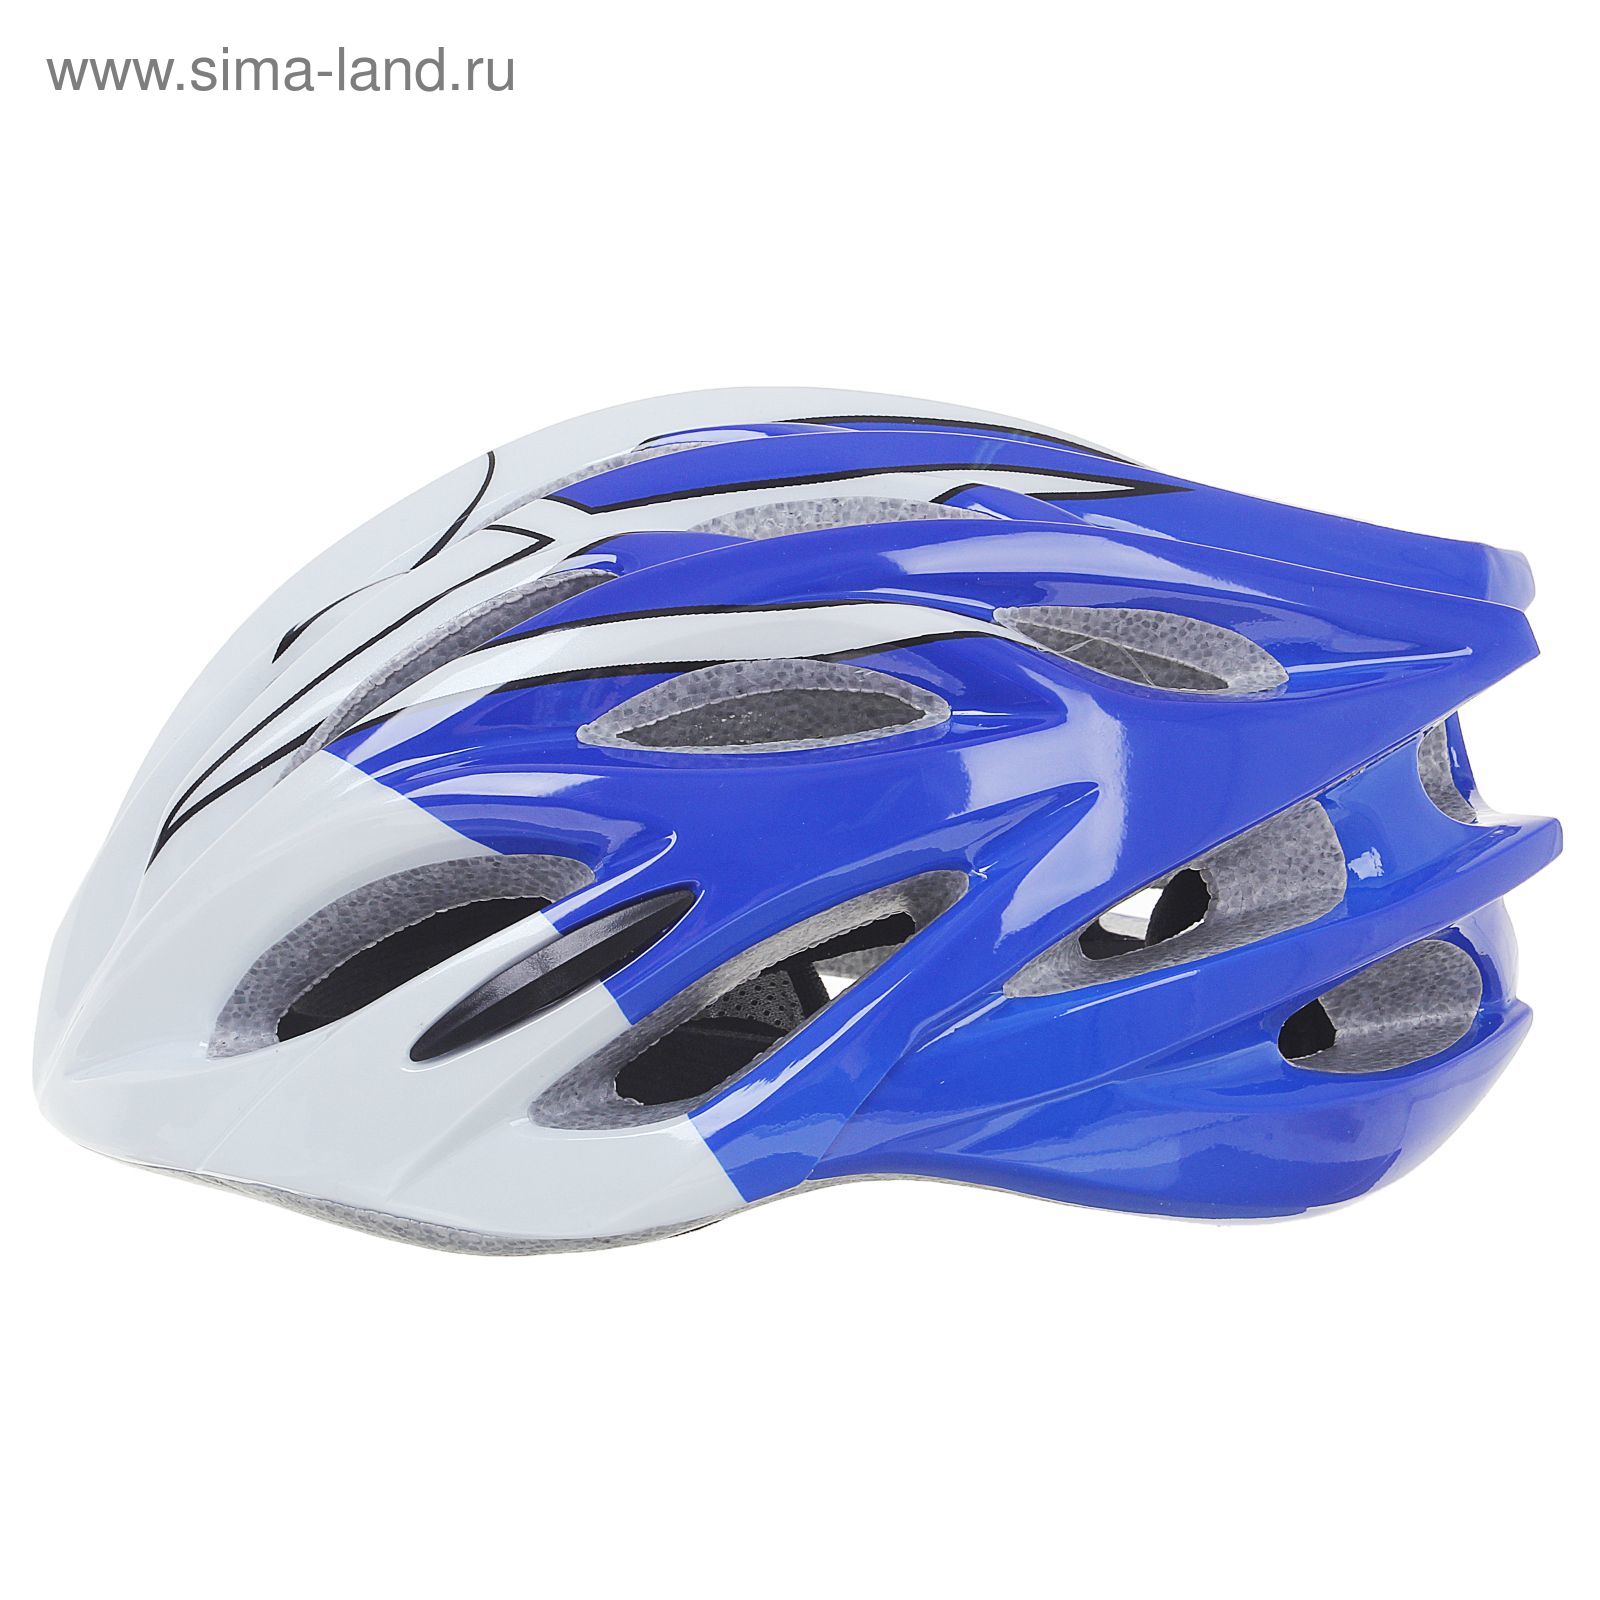 Шлем велосипедиста взрослый ОТ-328, бело-синий, диаметр 54 см